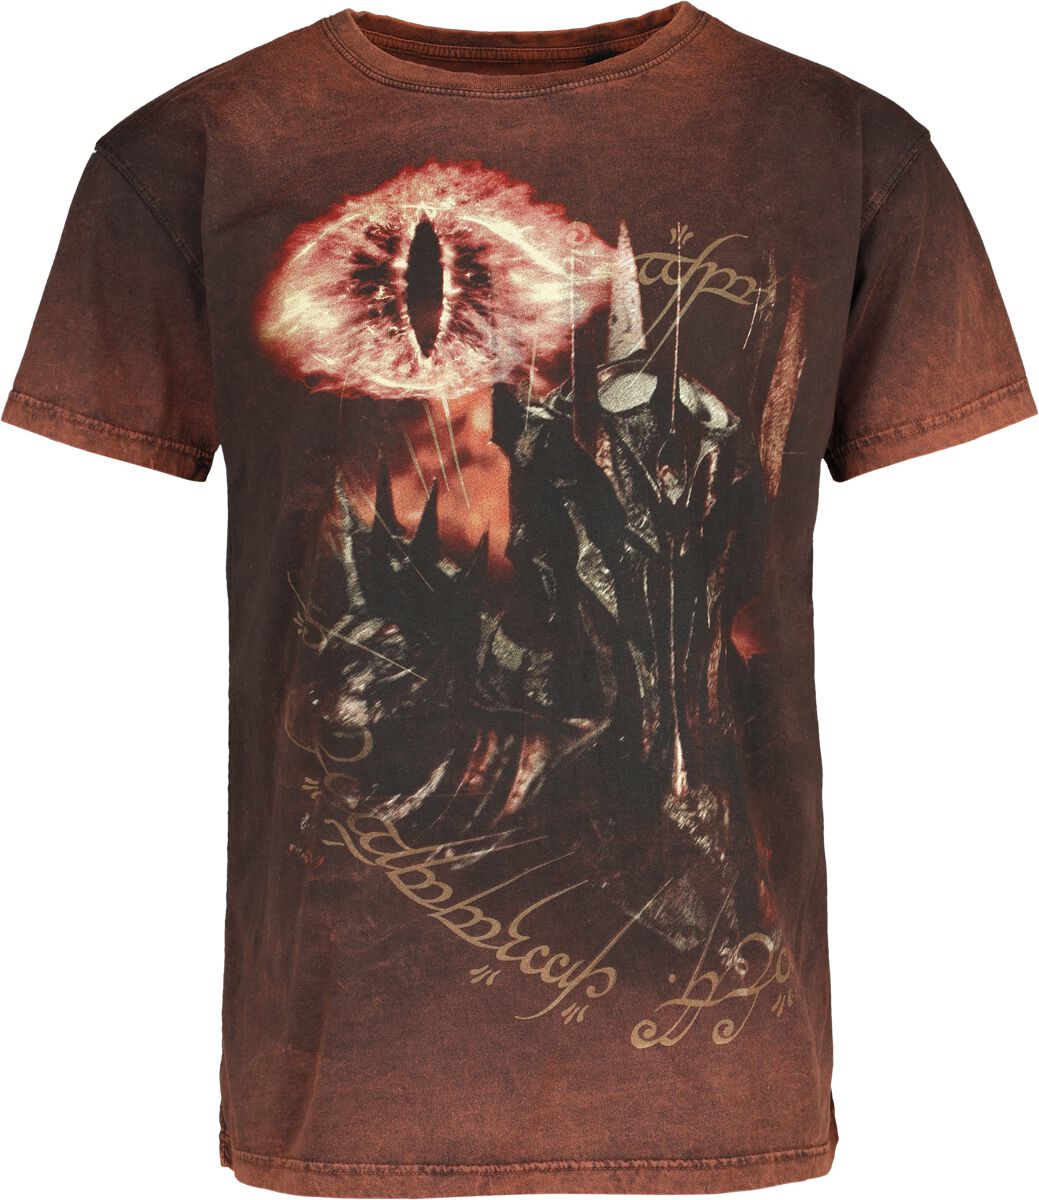 Der Herr der Ringe T-Shirt - Sauron - Eye Of Fire - S bis XXL - für Männer - Größe L - multicolor  - EMP exklusives Merchandise!